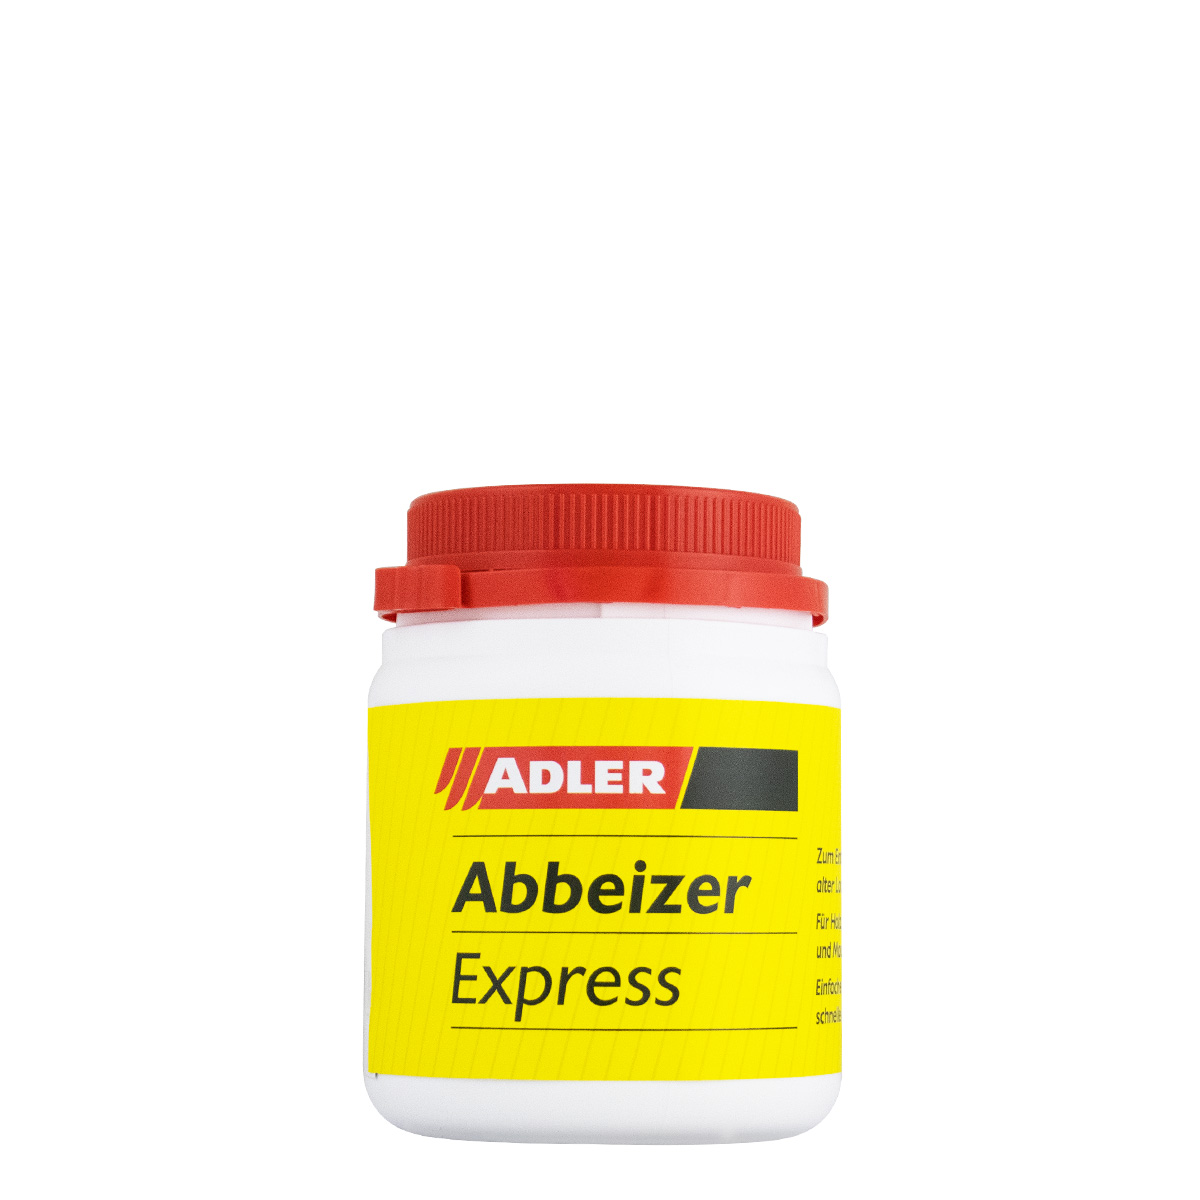 adler_abbeizer_express_500ml_gross